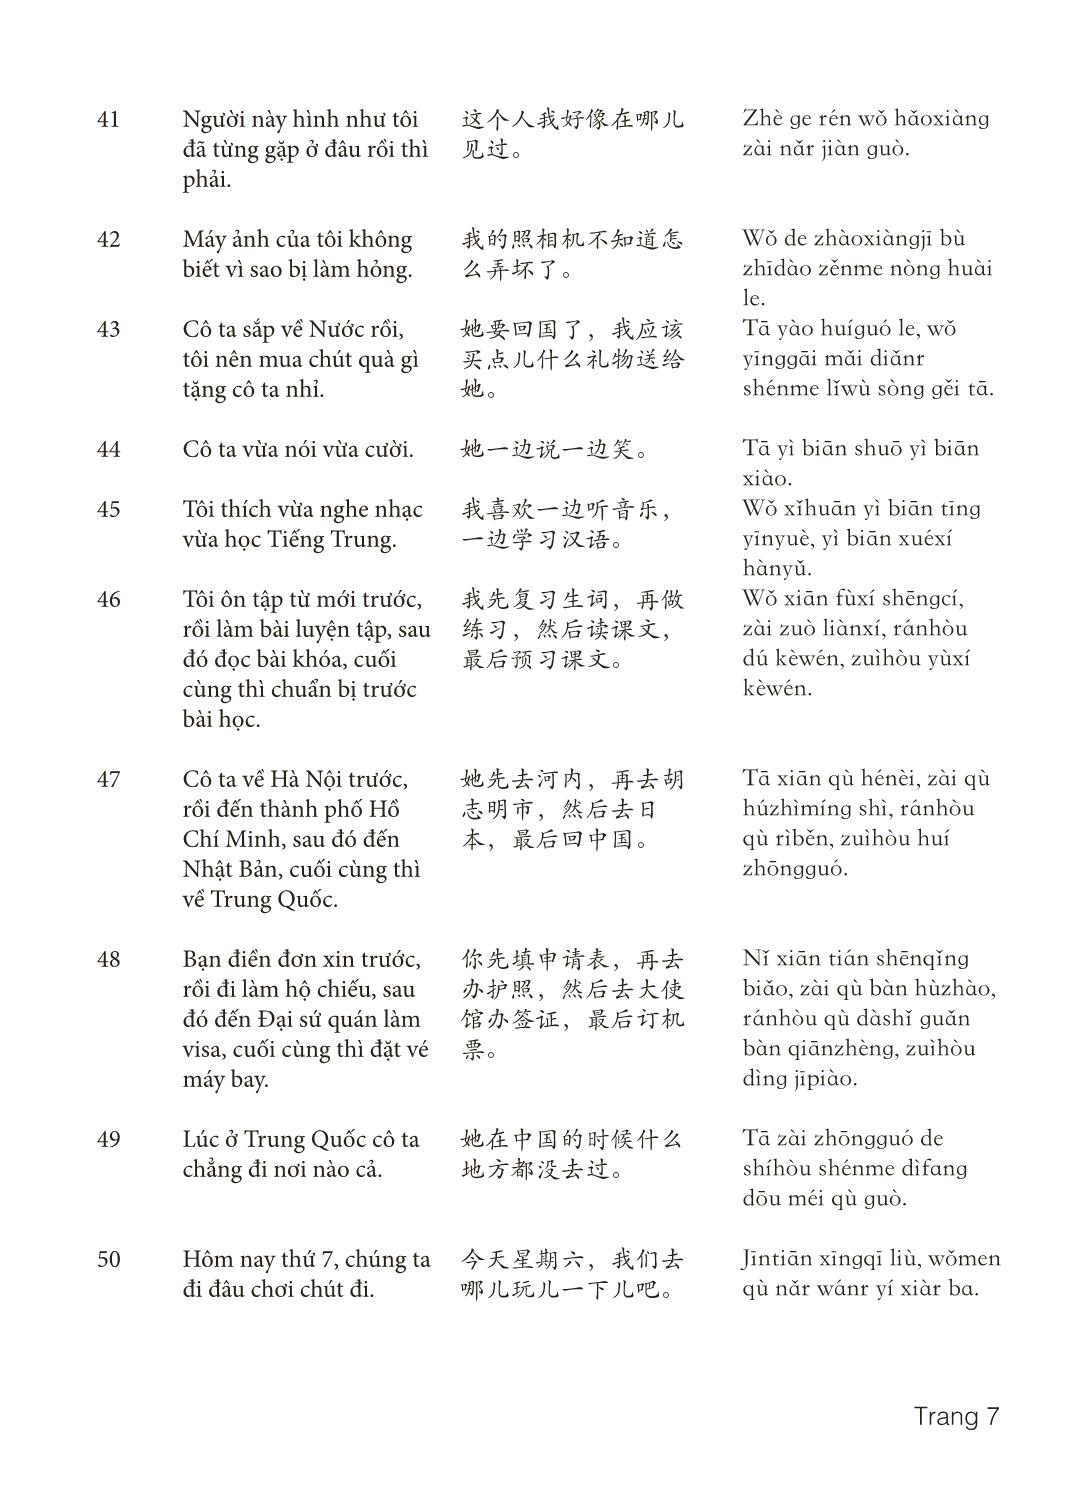 3000 Câu đàm thoại tiếng Hoa - Phần 27 trang 7